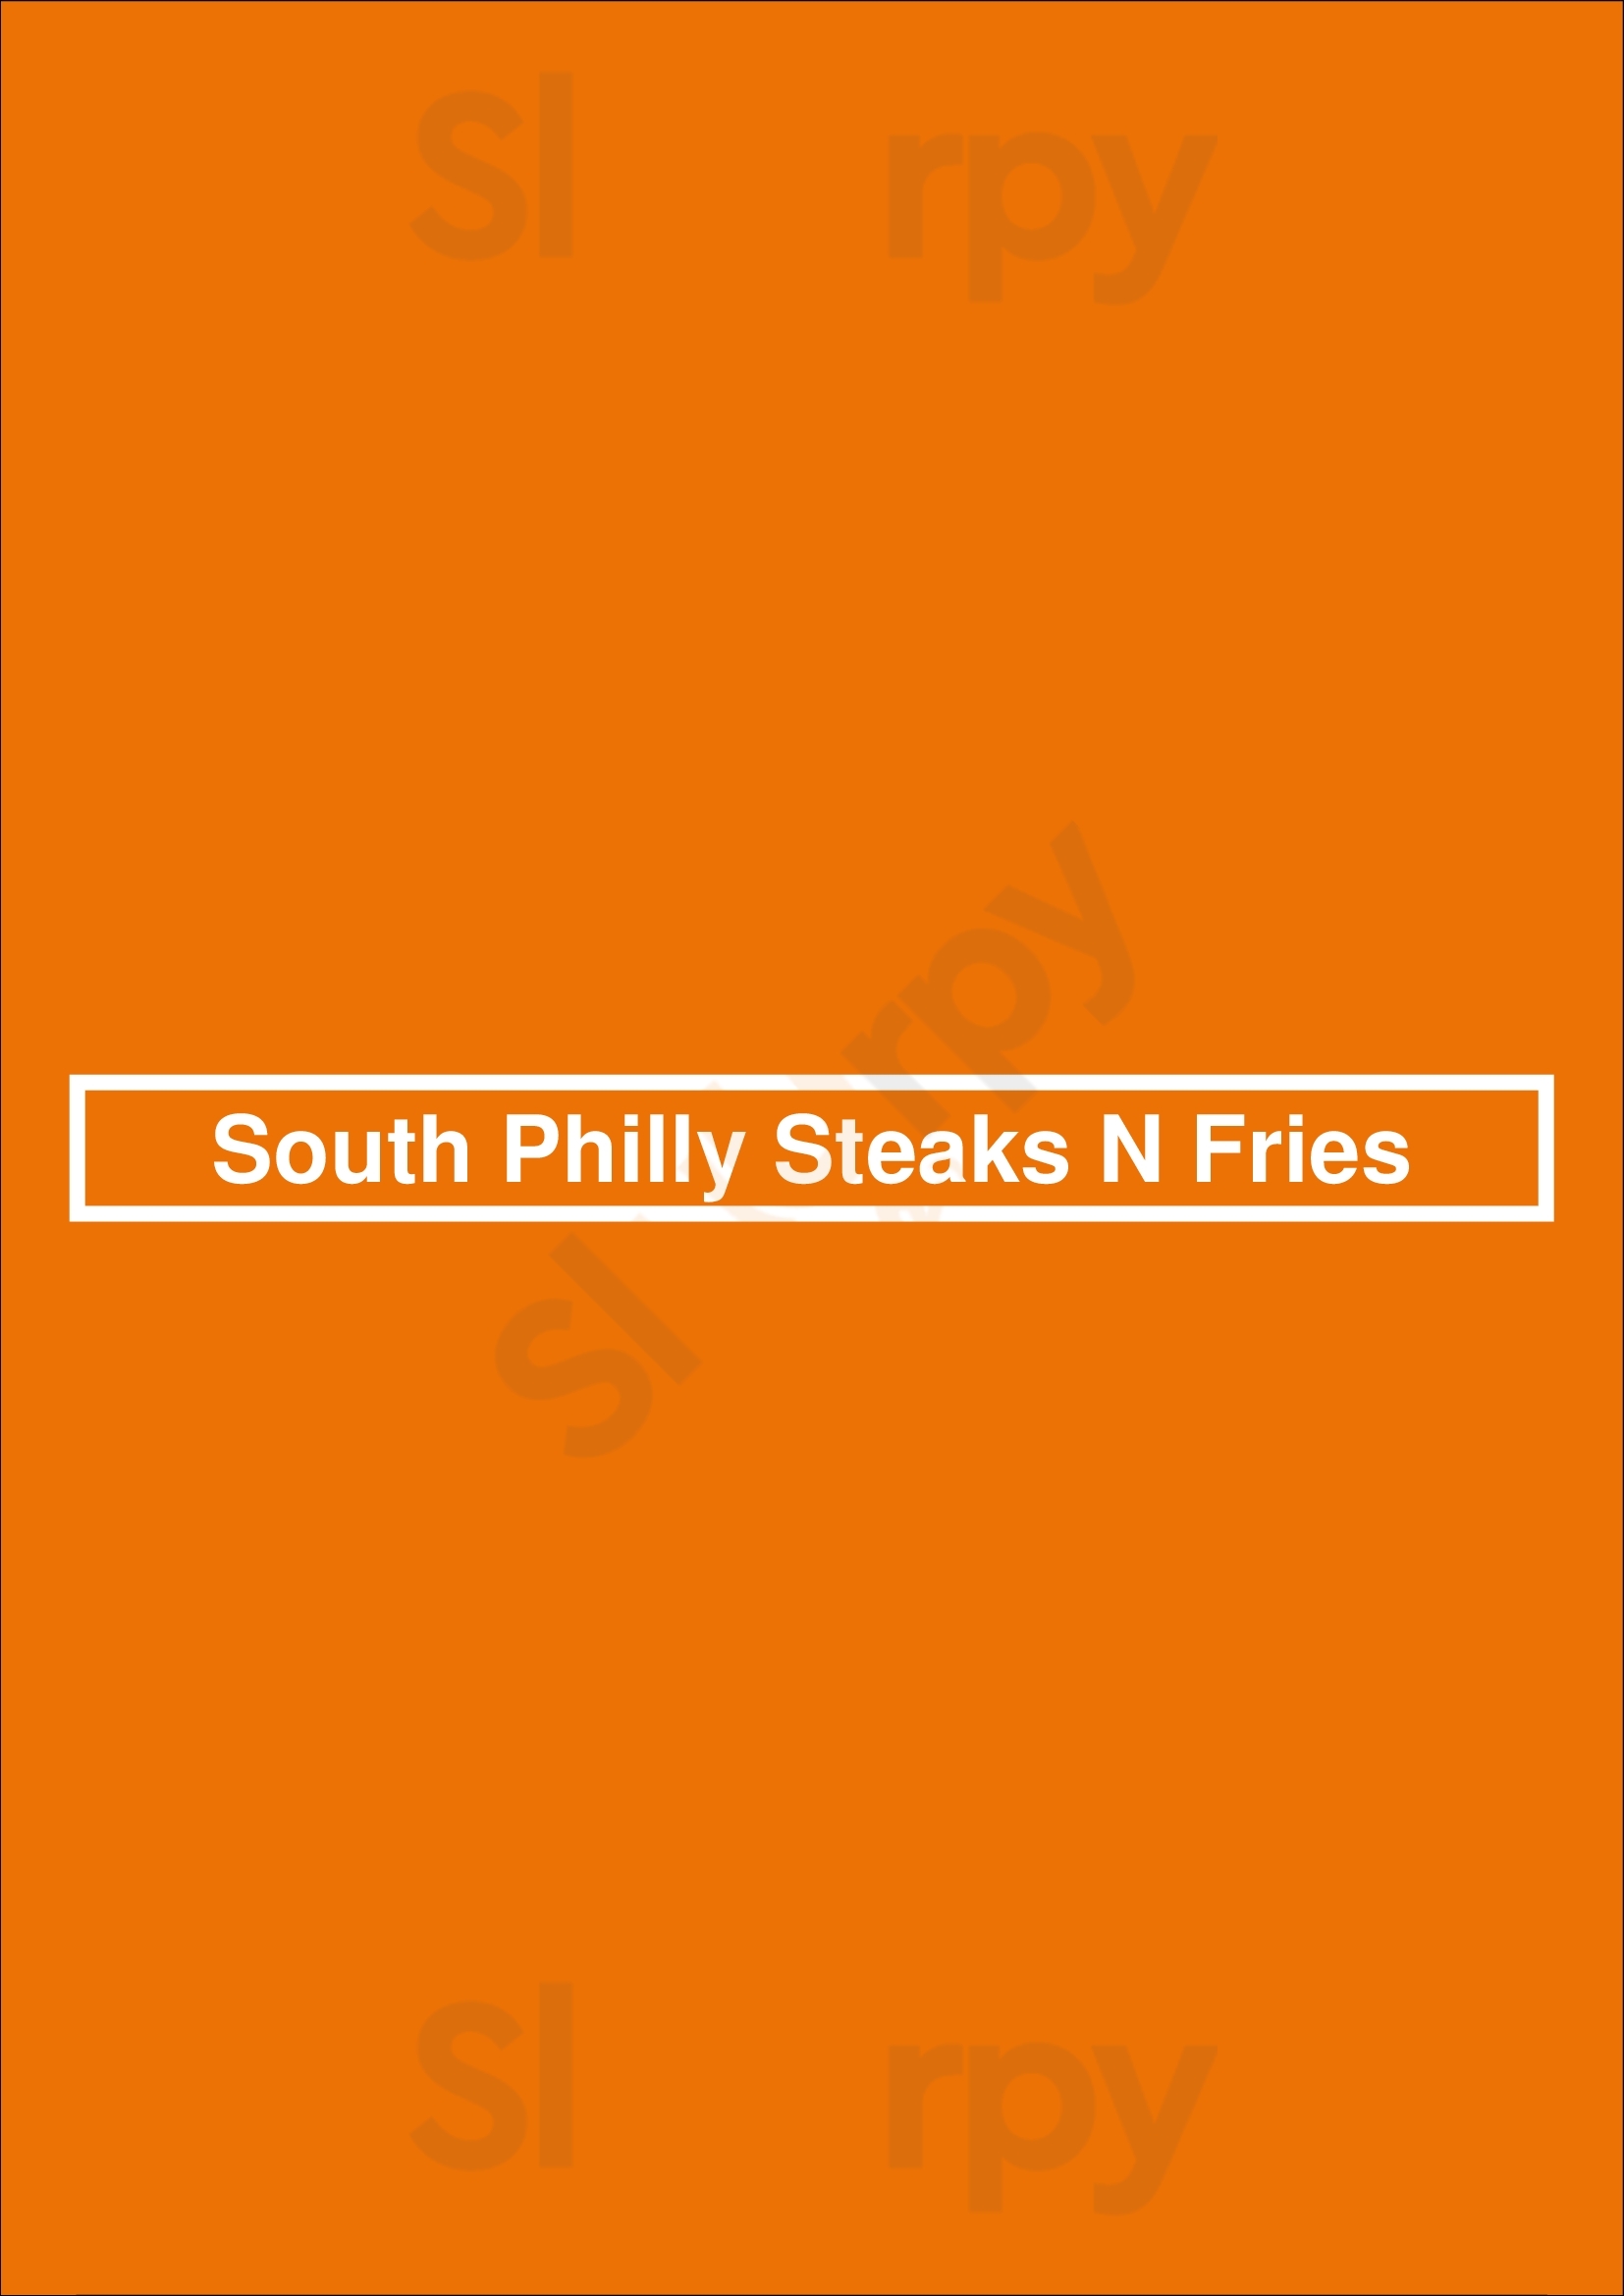 South Philly Steaks N Fries Staten Island Menu - 1